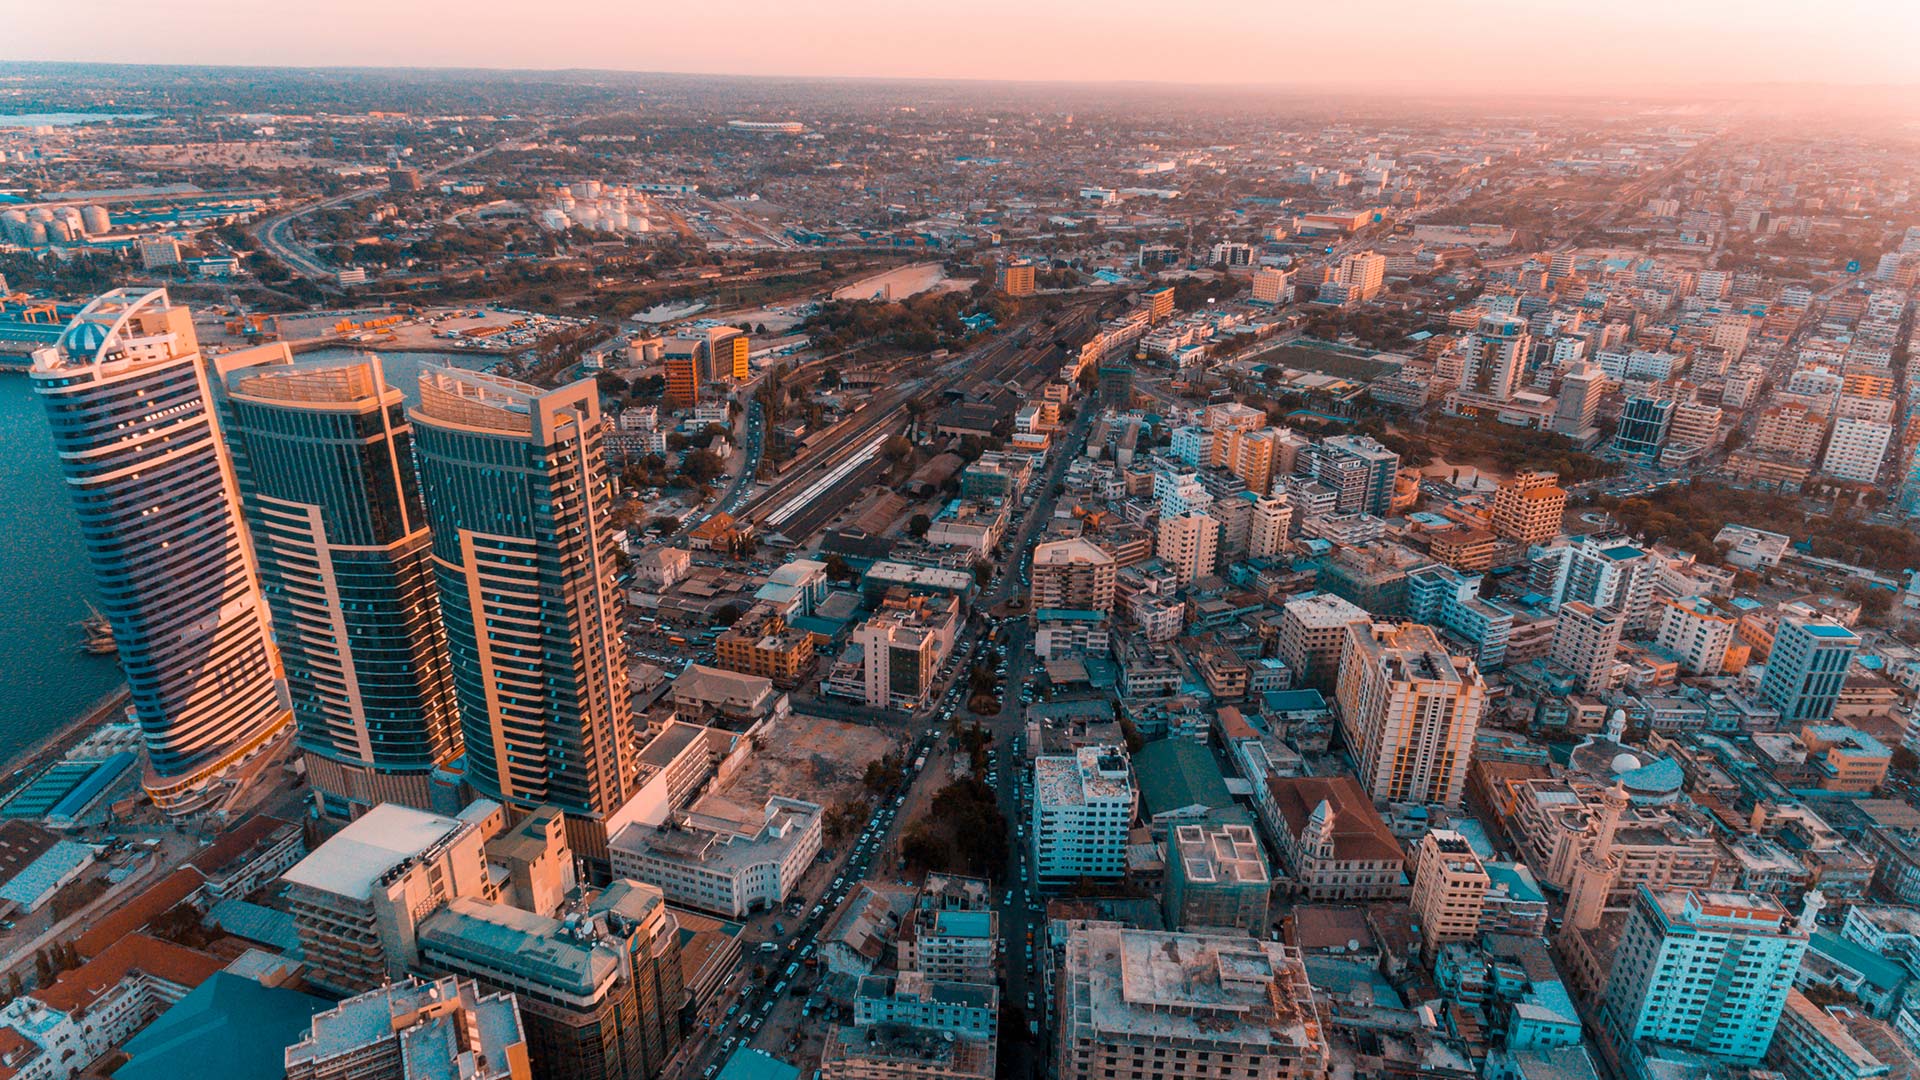 City view of Dar es Salaam, Africa